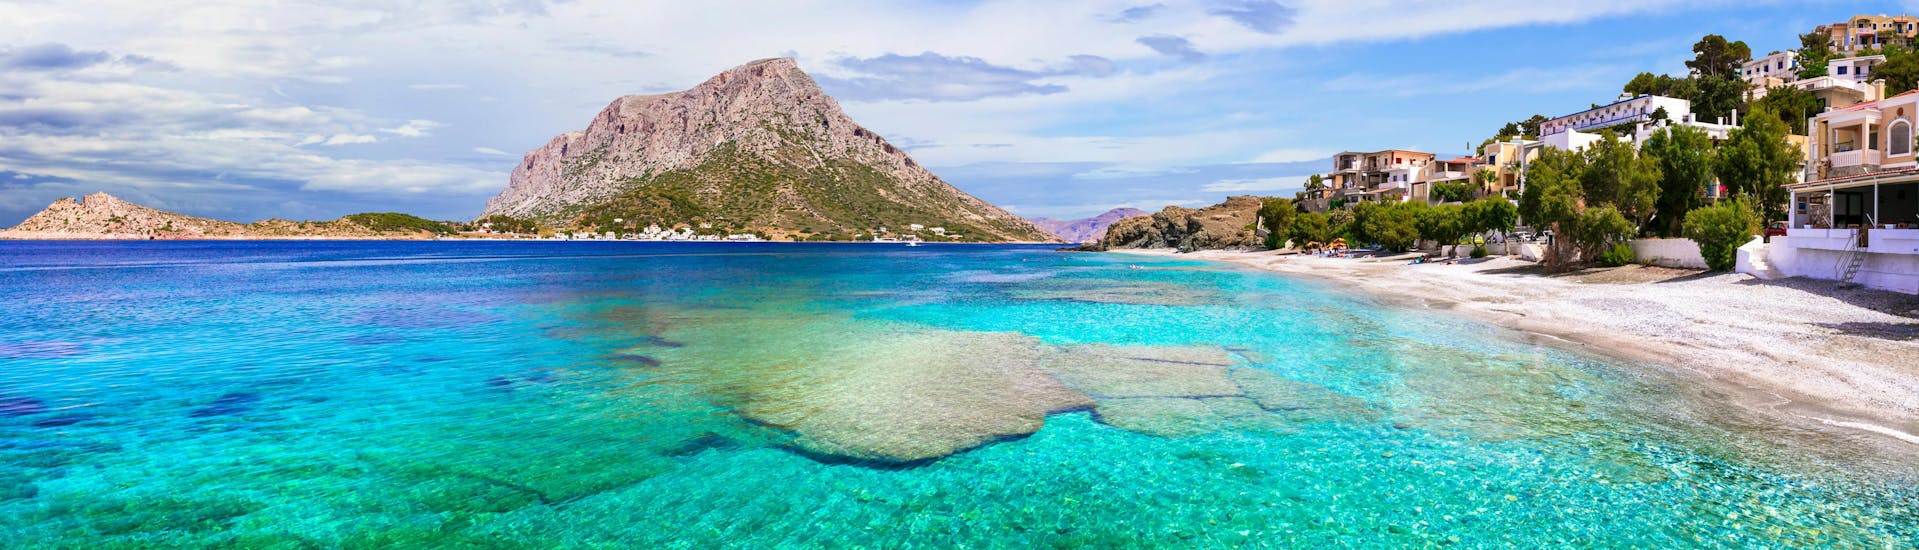 Blick auf Kalymnos, eine wunderschöne Insel, die Sie mit einer Bootstour entdecken können.